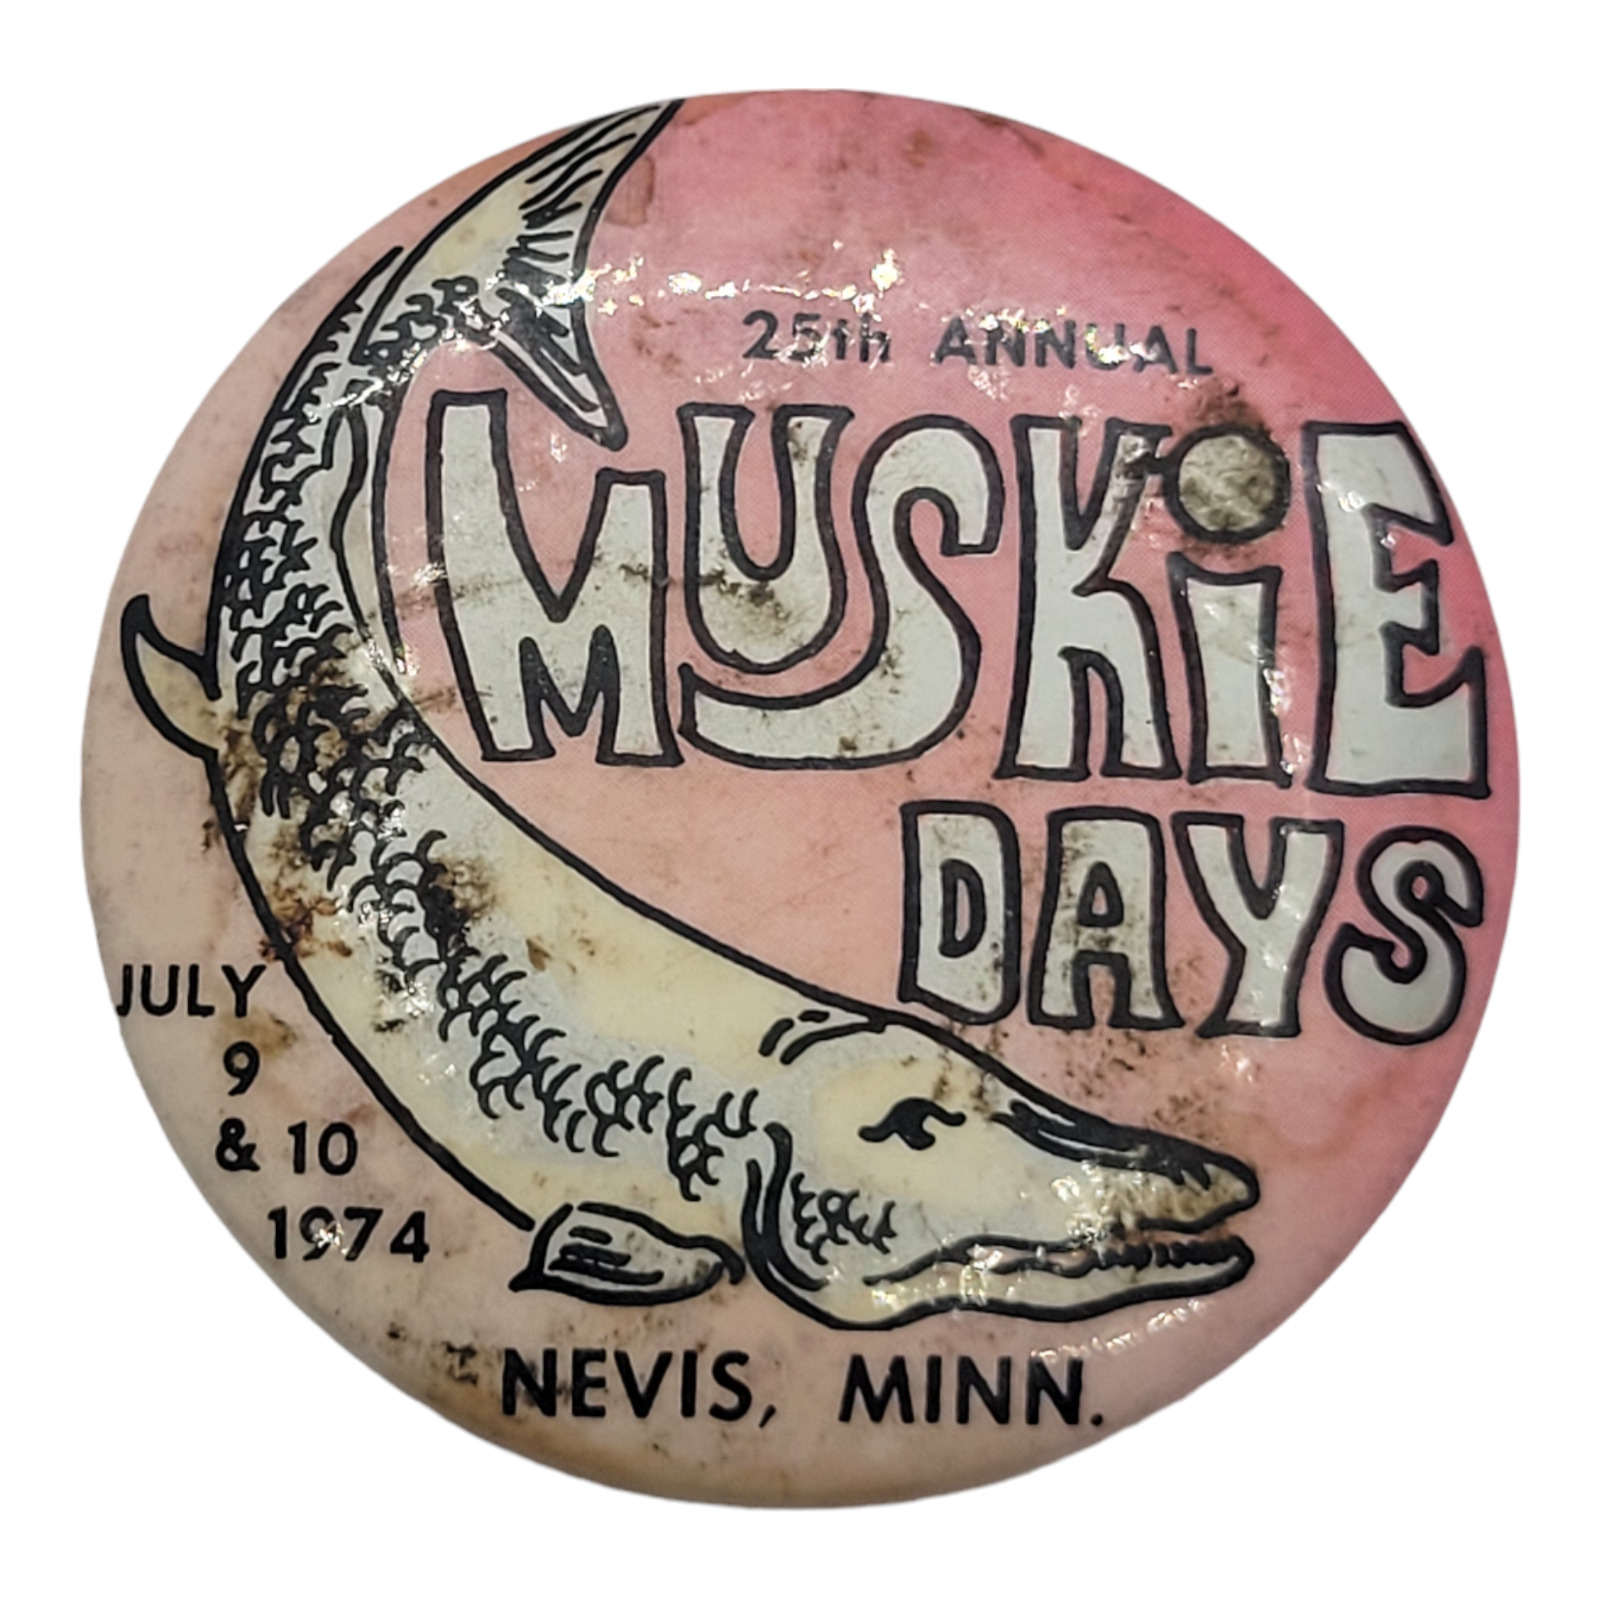 1974 Muskie Days Nevis MN Pinback Button 2282 25st Annual 2\